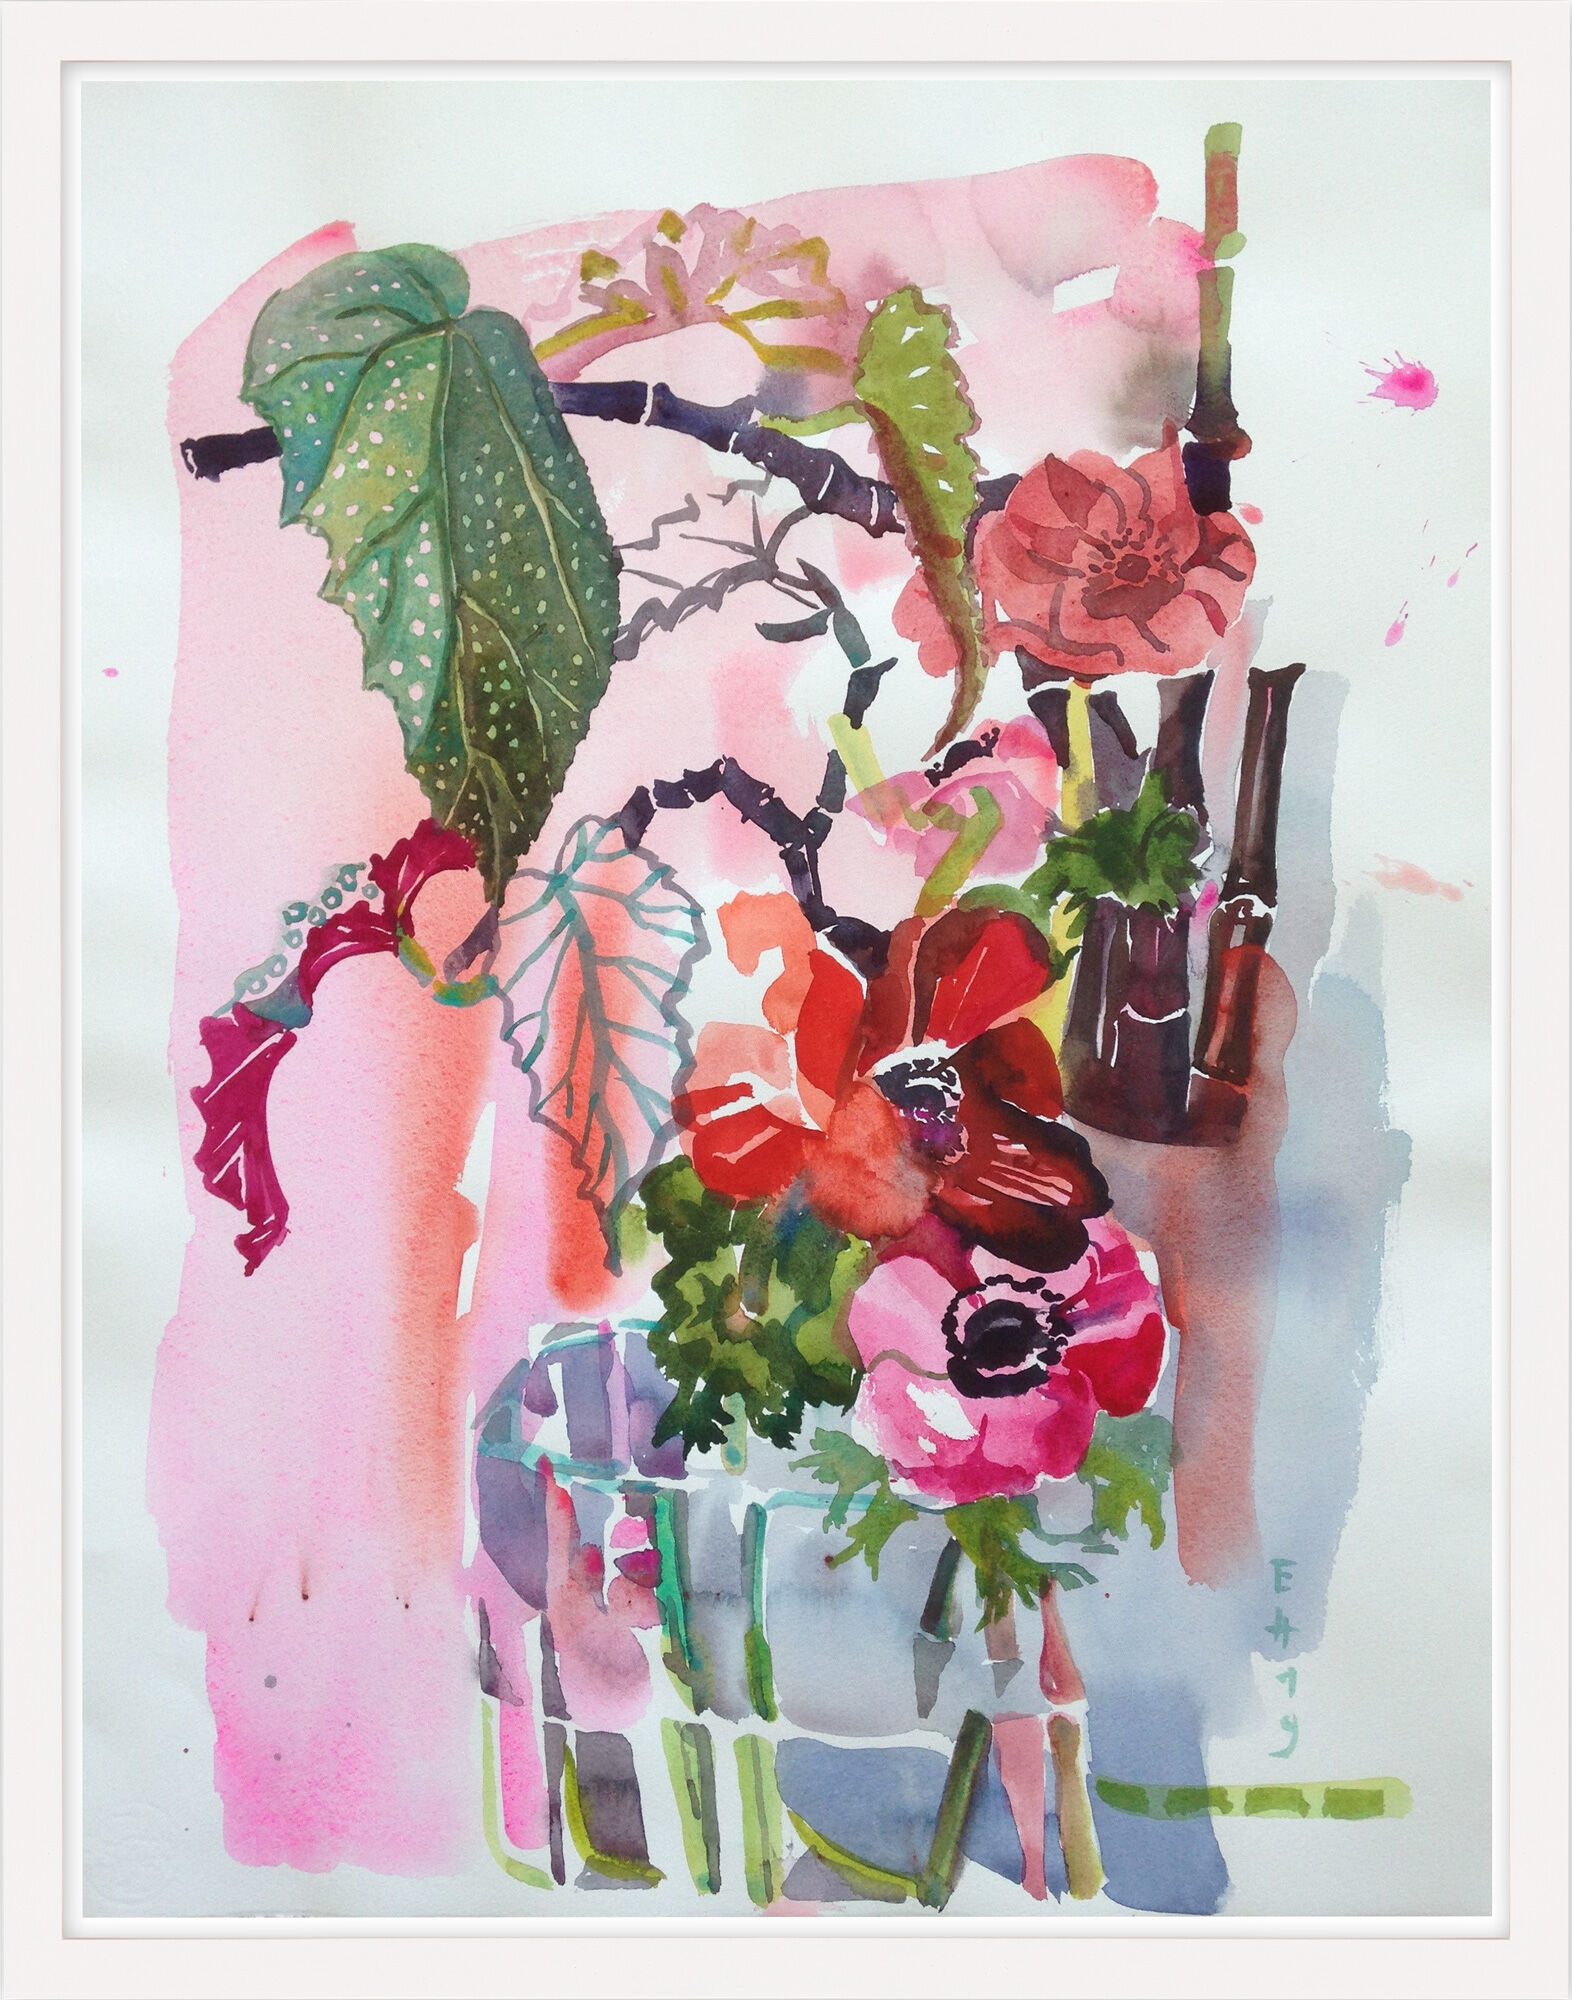 Beeld "Ranunculus Pink" (2019) (Uniek stuk) von Evelyn Höfs